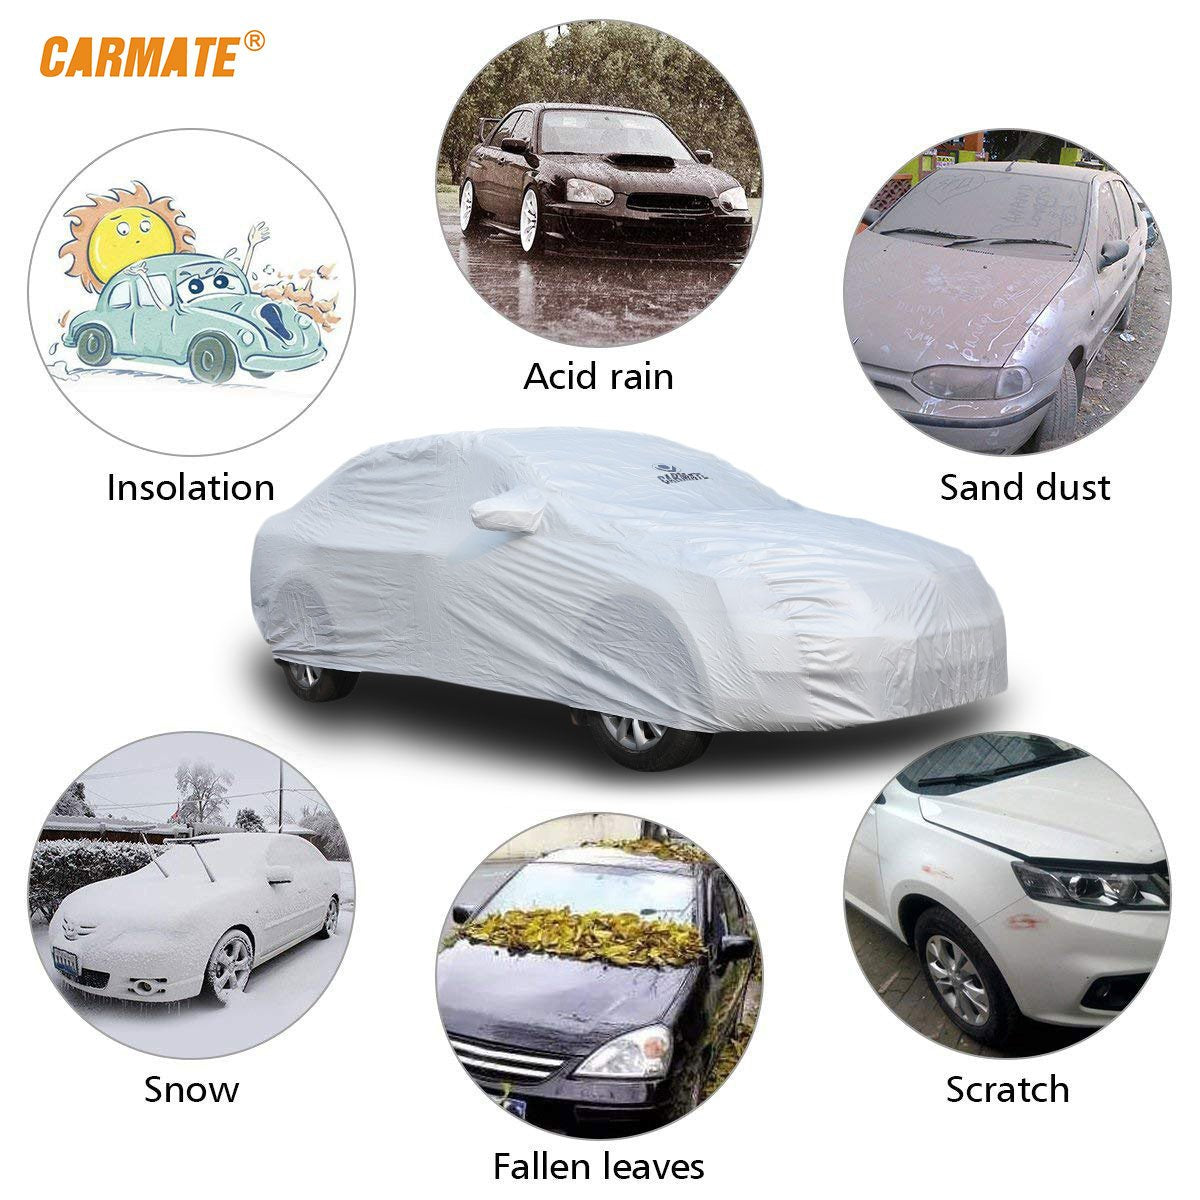 Carmate Premium Car Body Cover Silver Matty (Silver) for  Tata - Sumo Grande - CARMATE®